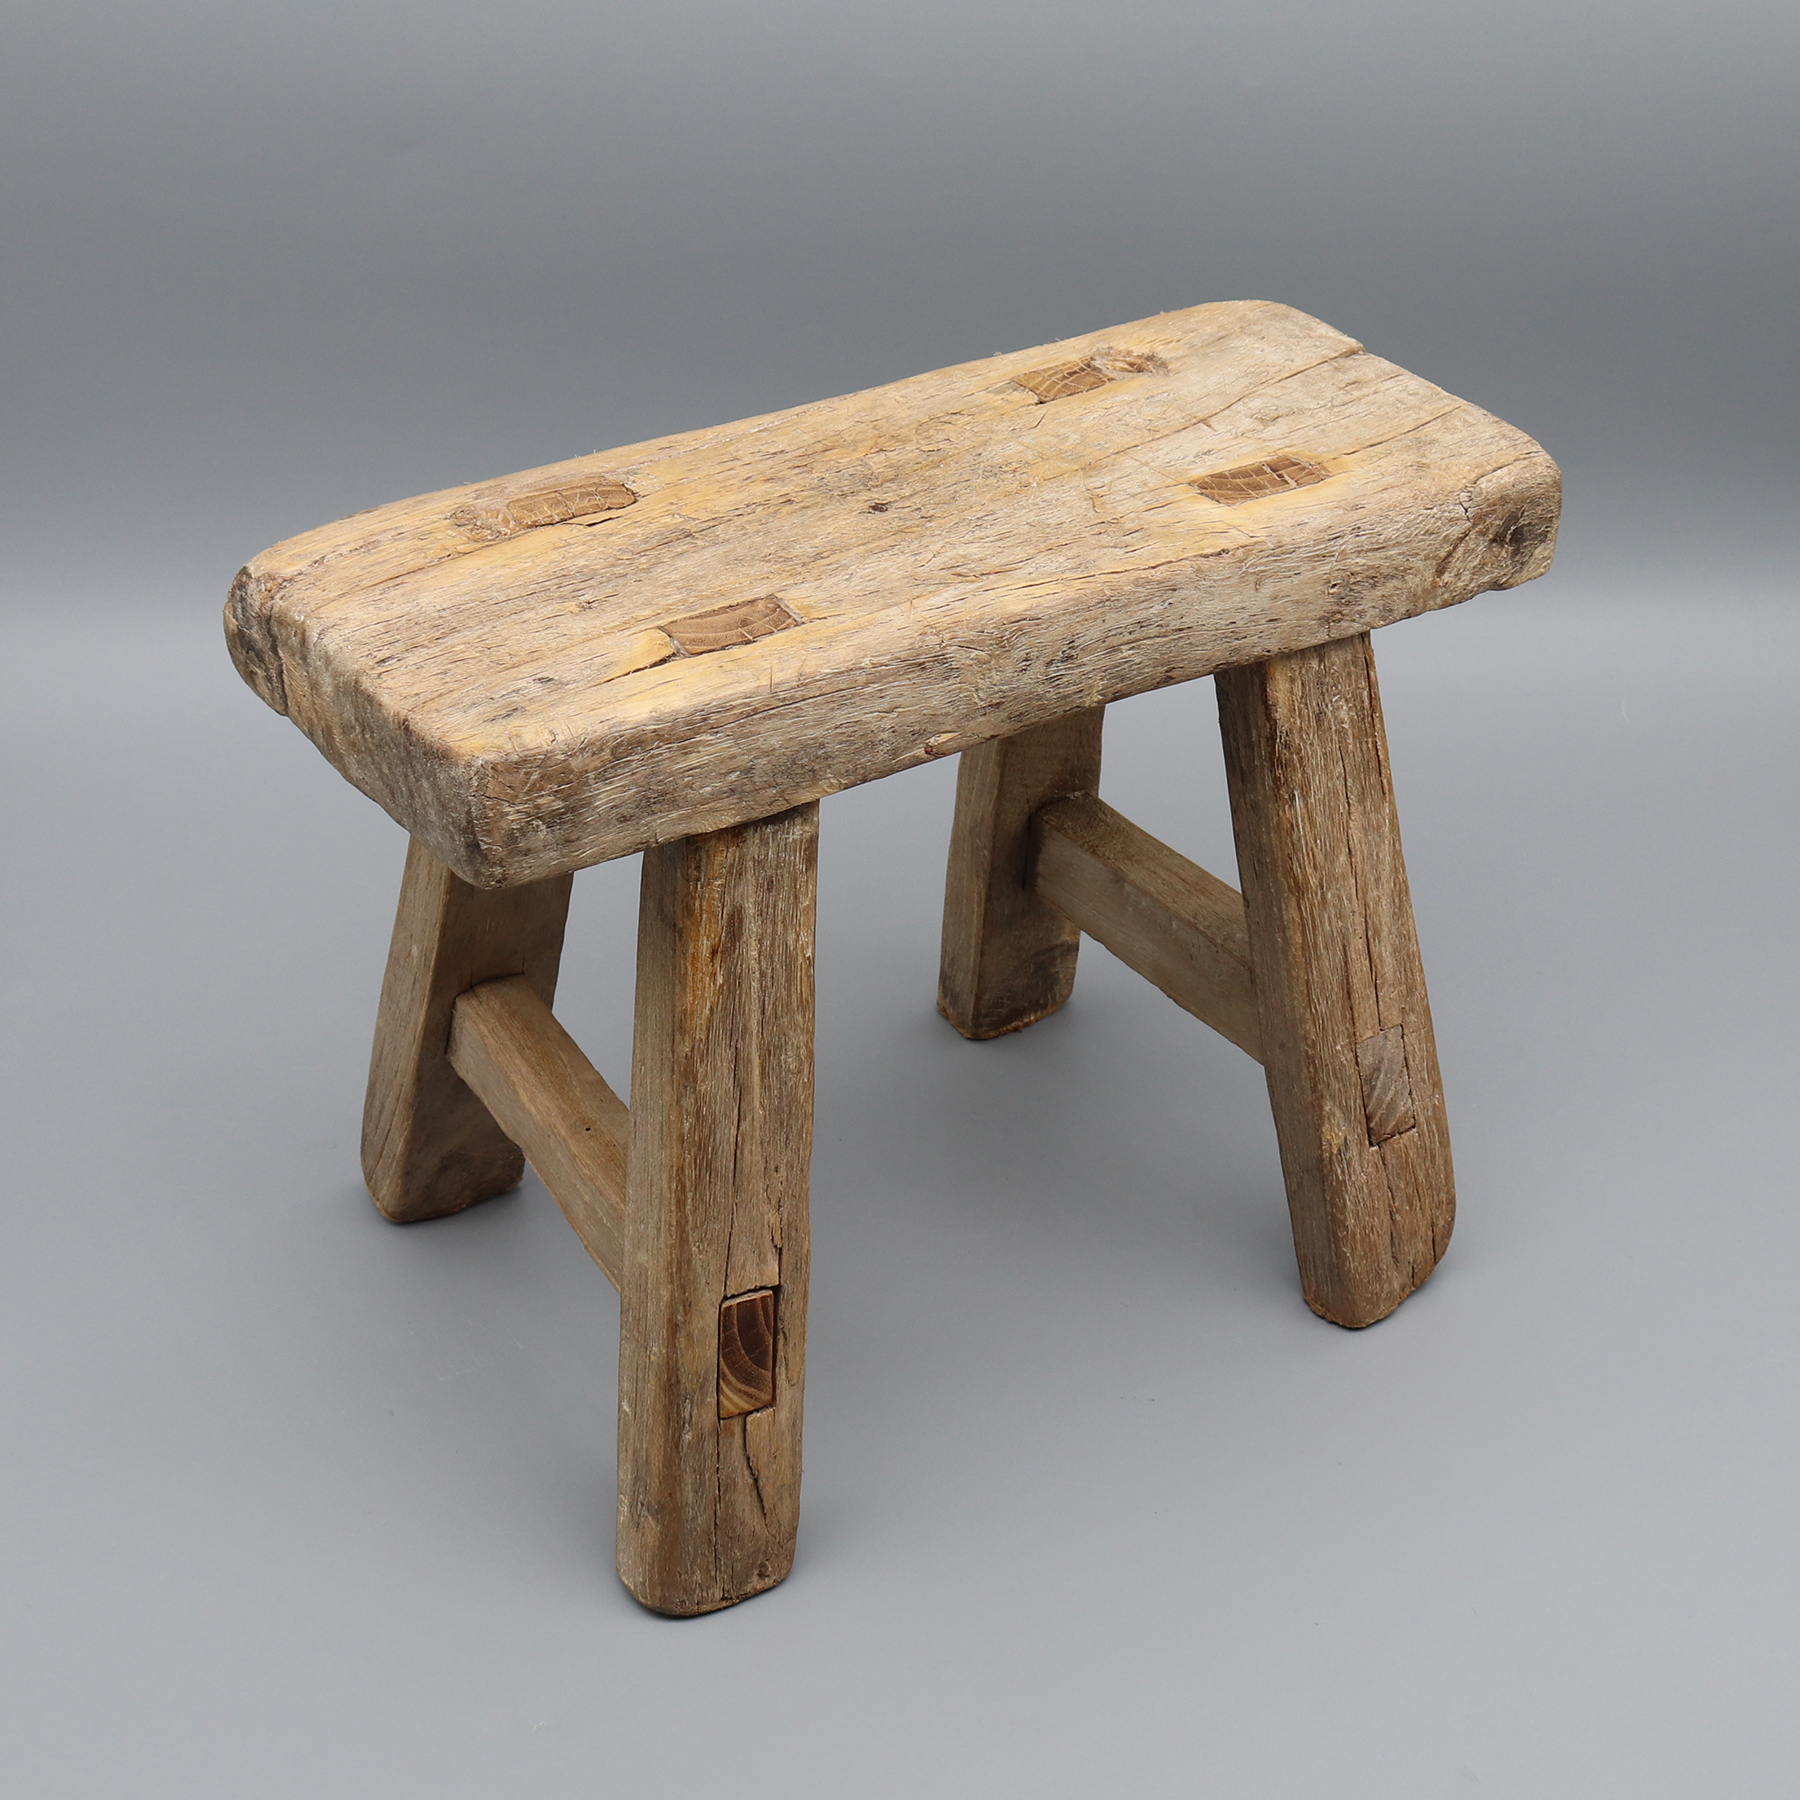 Tabouret en bois antique, mortaise et tenon articulé, petite table, support végétal, bois massif